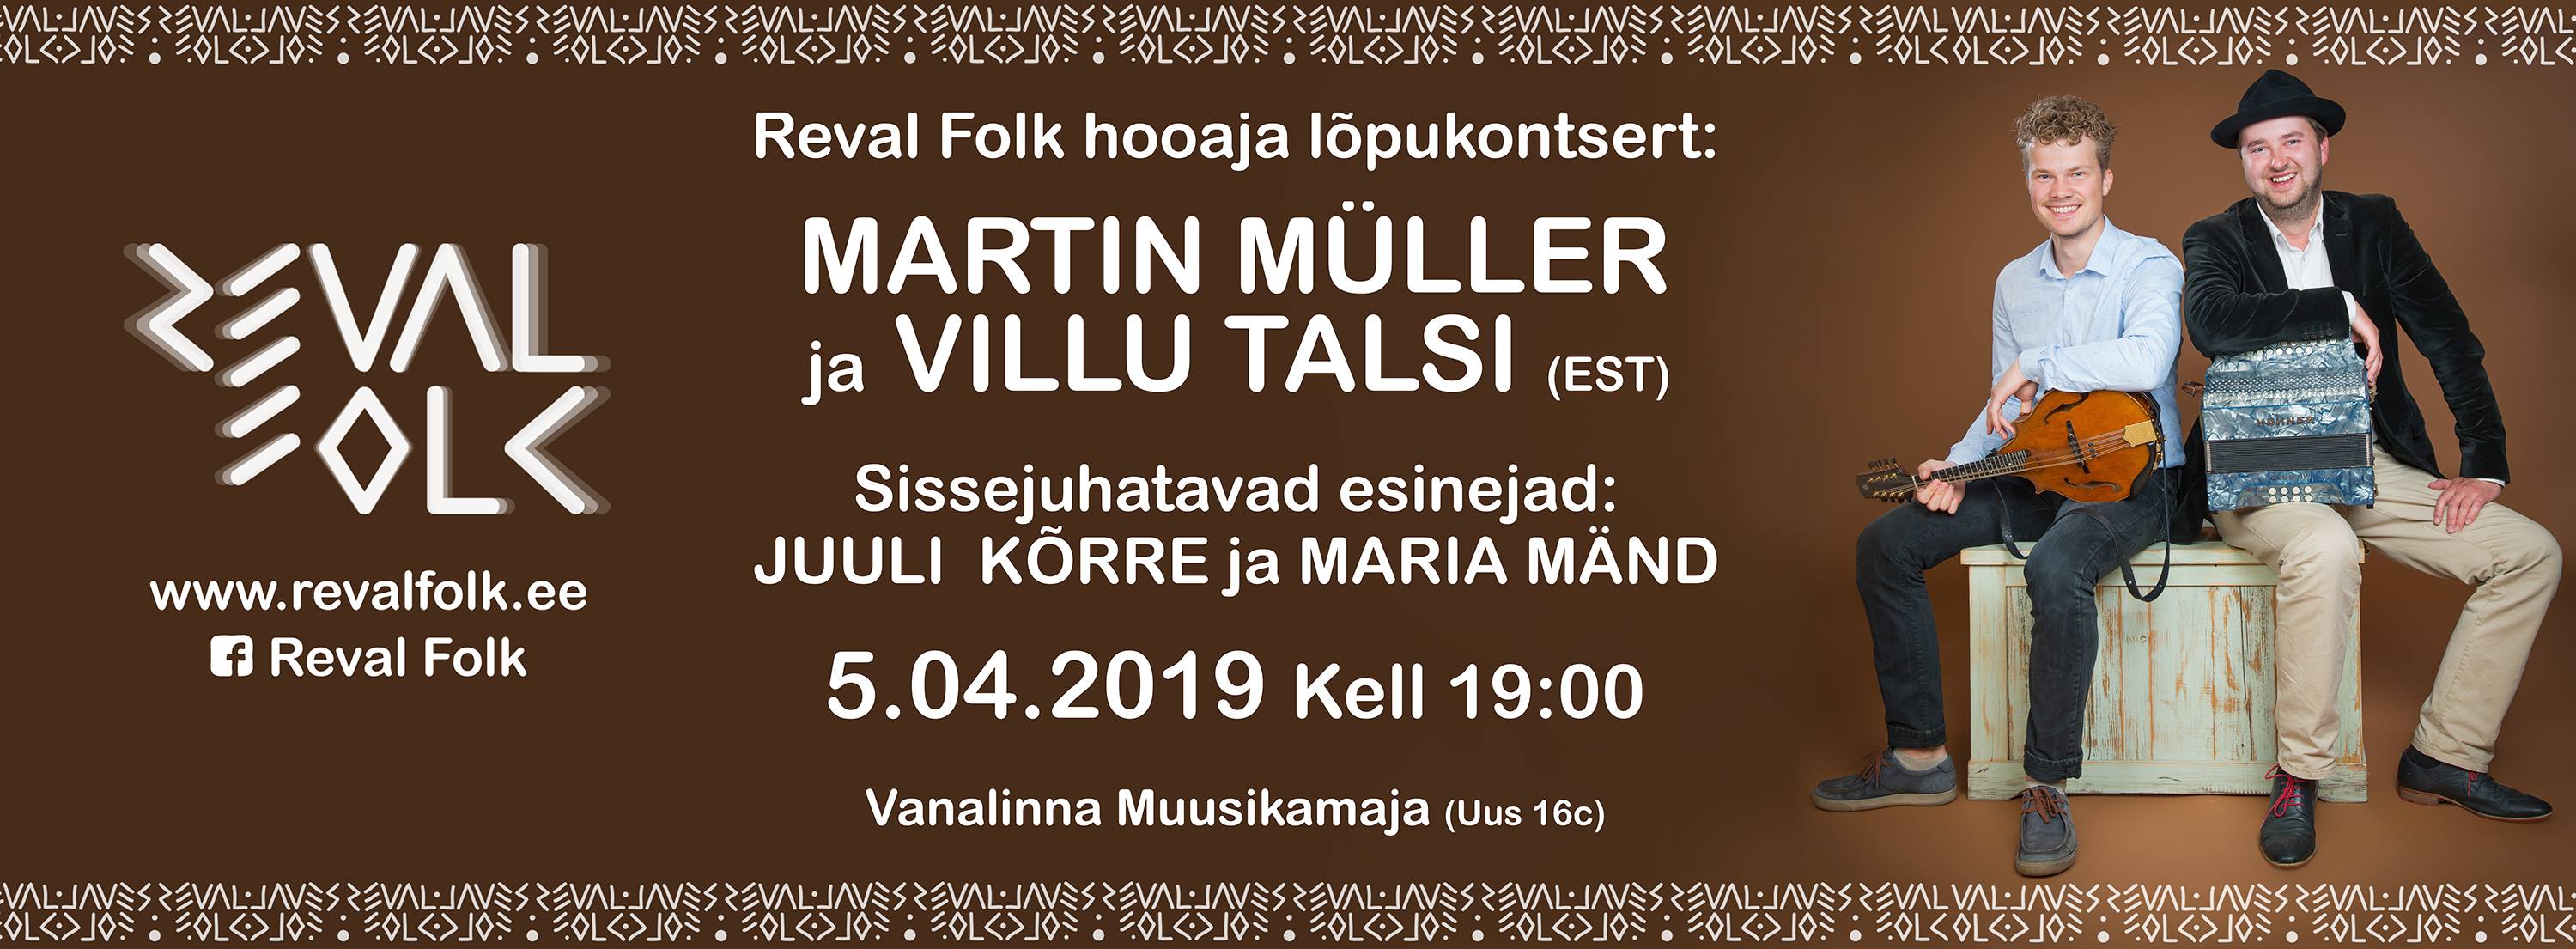 Reval Folk hooaja lõpukontsert: Martin Müller ja Villu Talsi